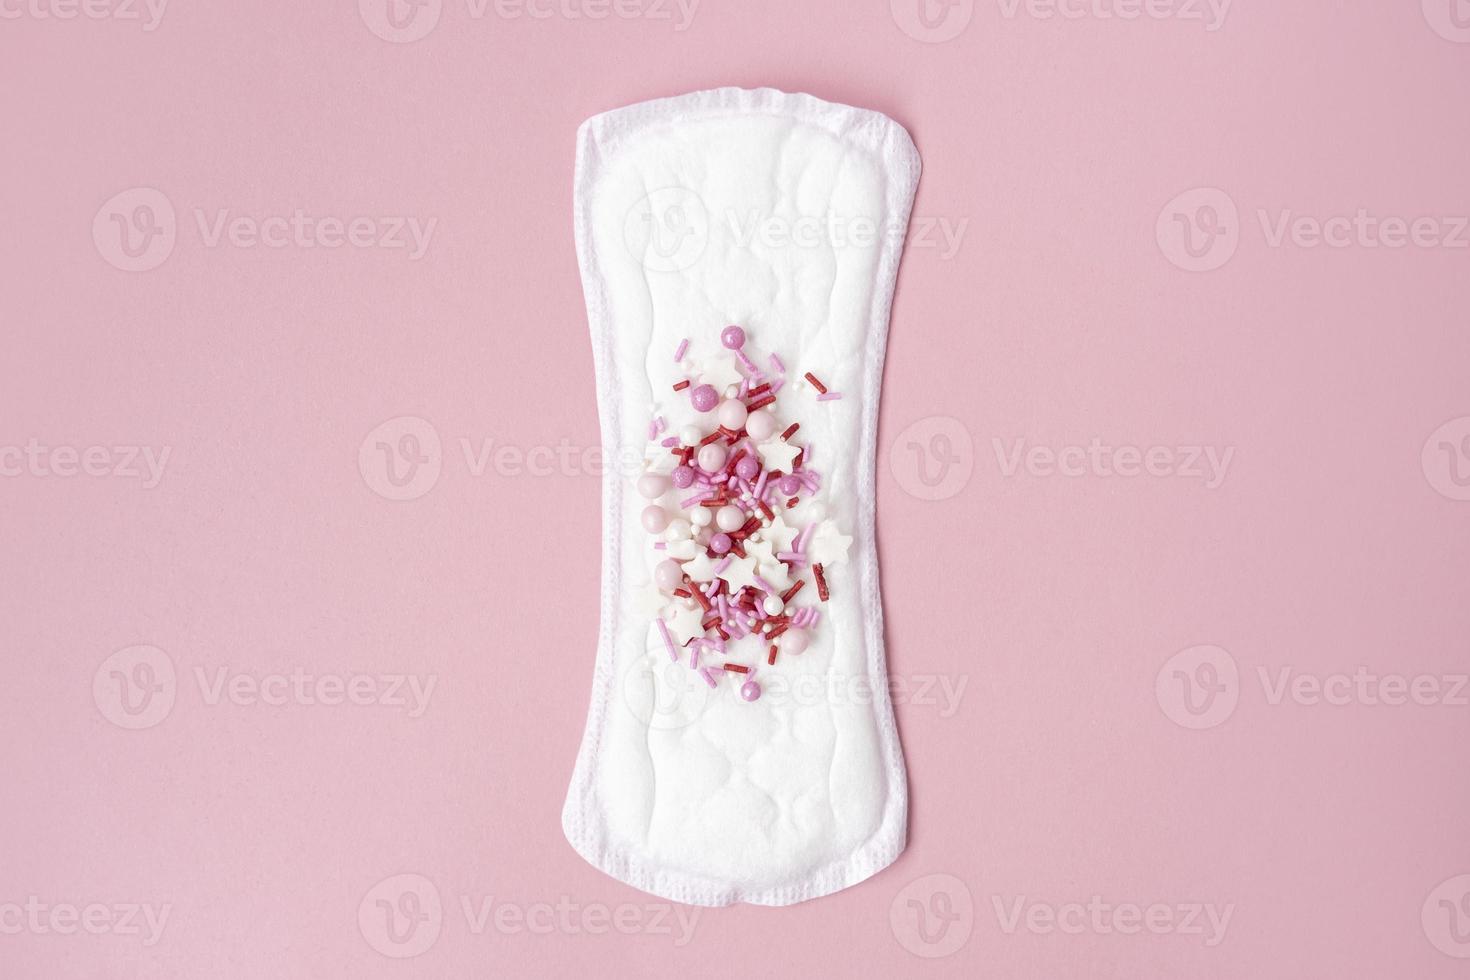 almohadilla menstrual con confeti rojo como gotas de sangre sobre fondo rosa pastel. concepto minimalista de higiene femenina durante la menstruación. vista superior. foto